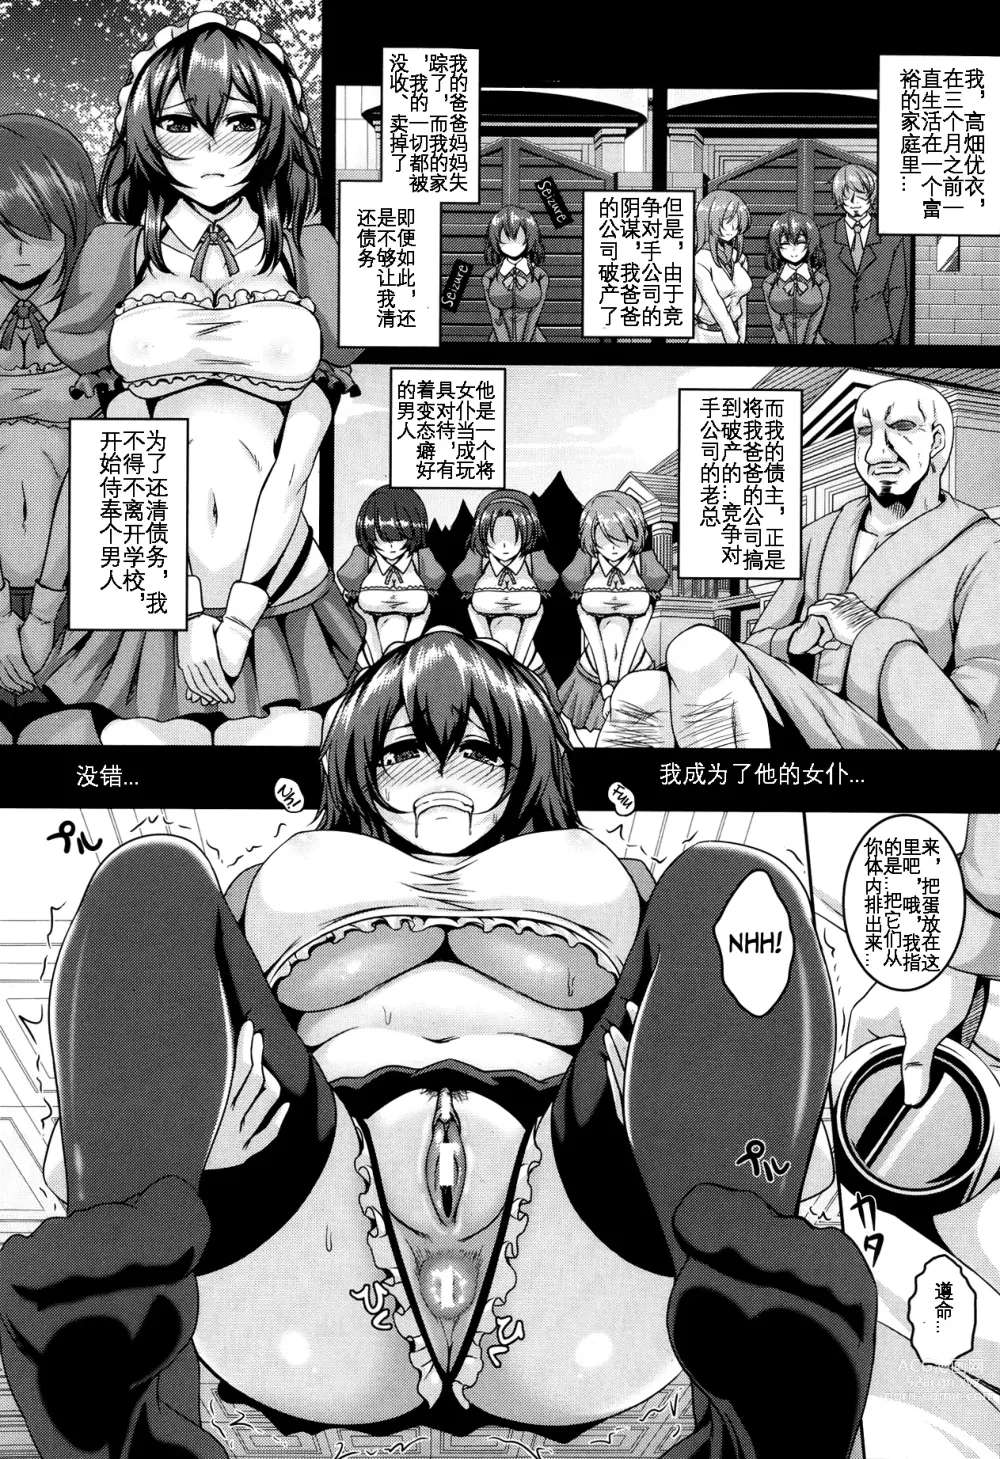 Page 3 of manga 没落大小姐的 性奴隶义务